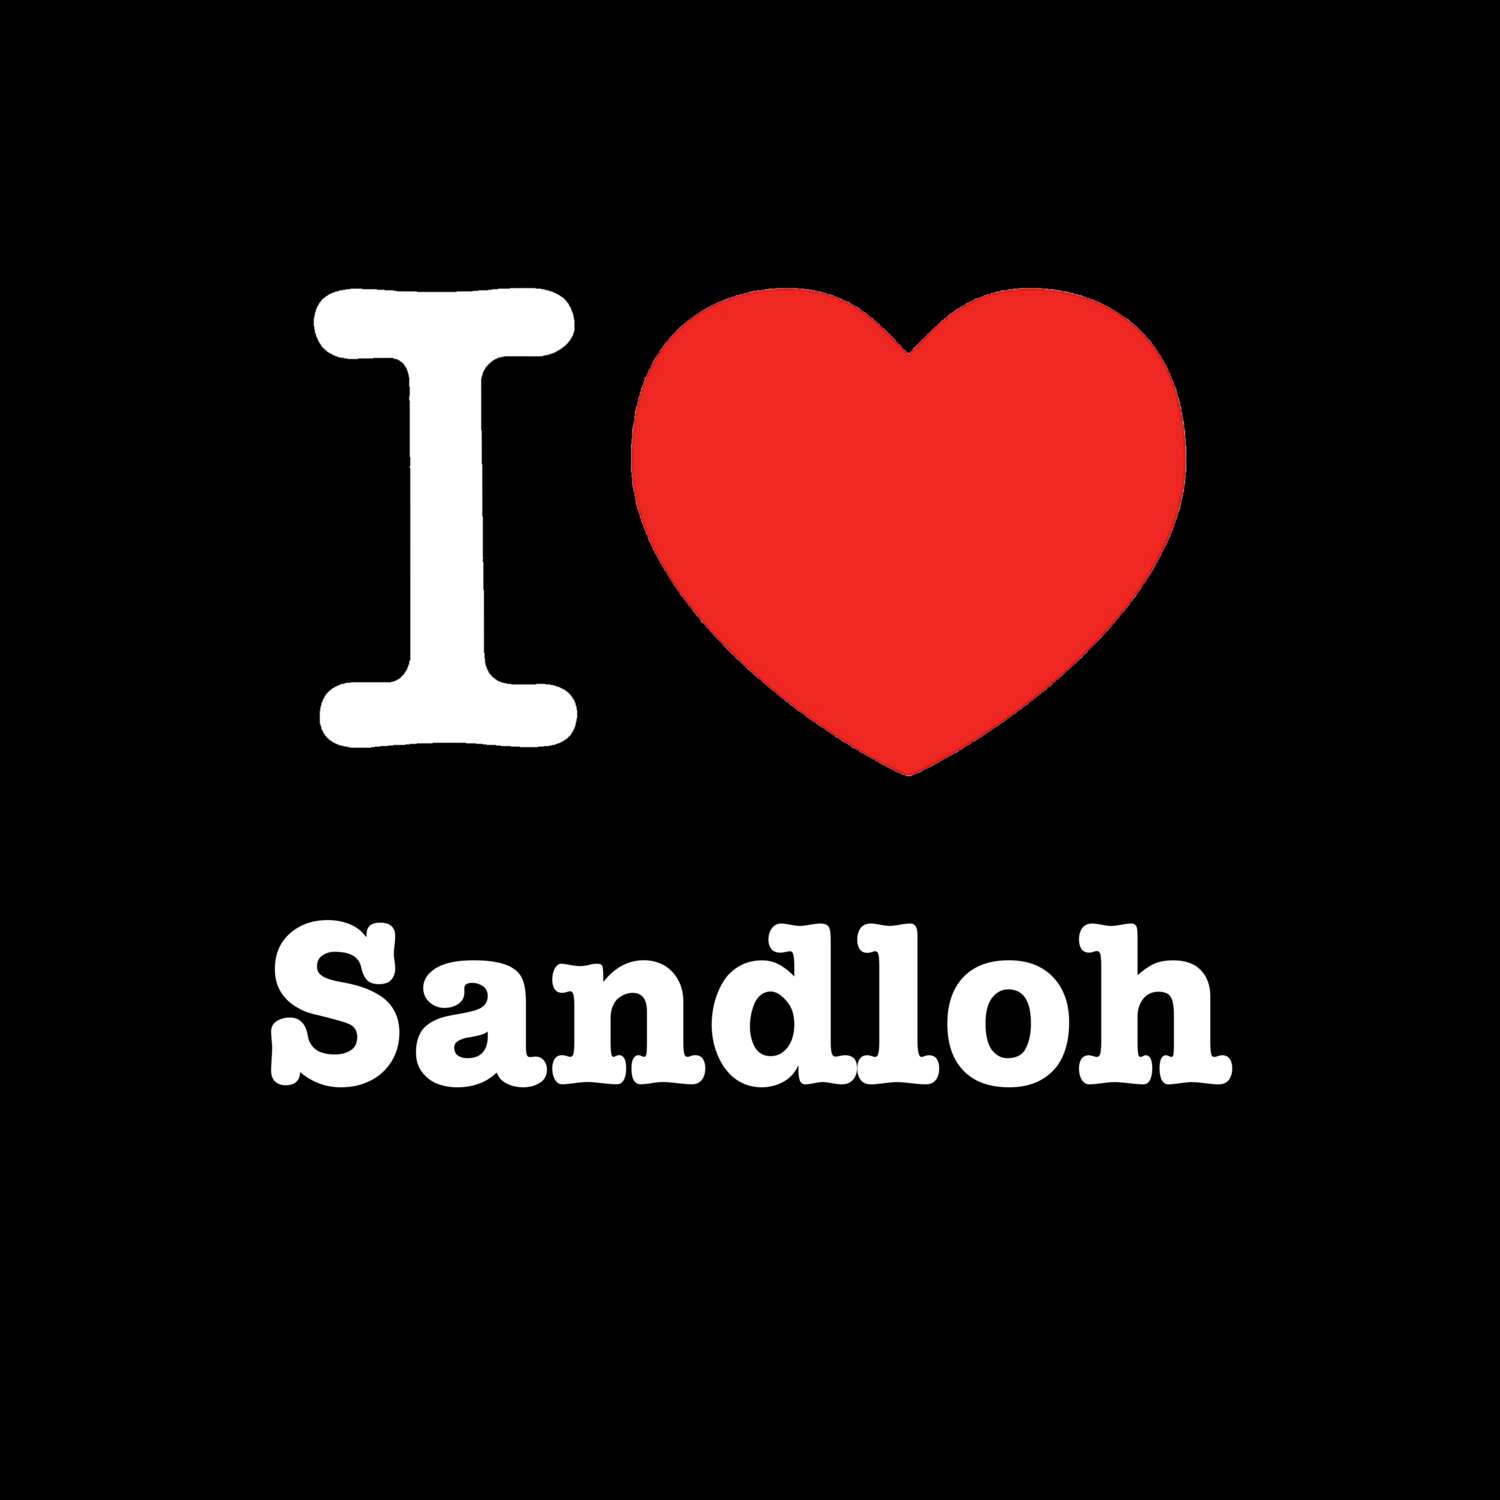 Sandloh T-Shirt »I love«